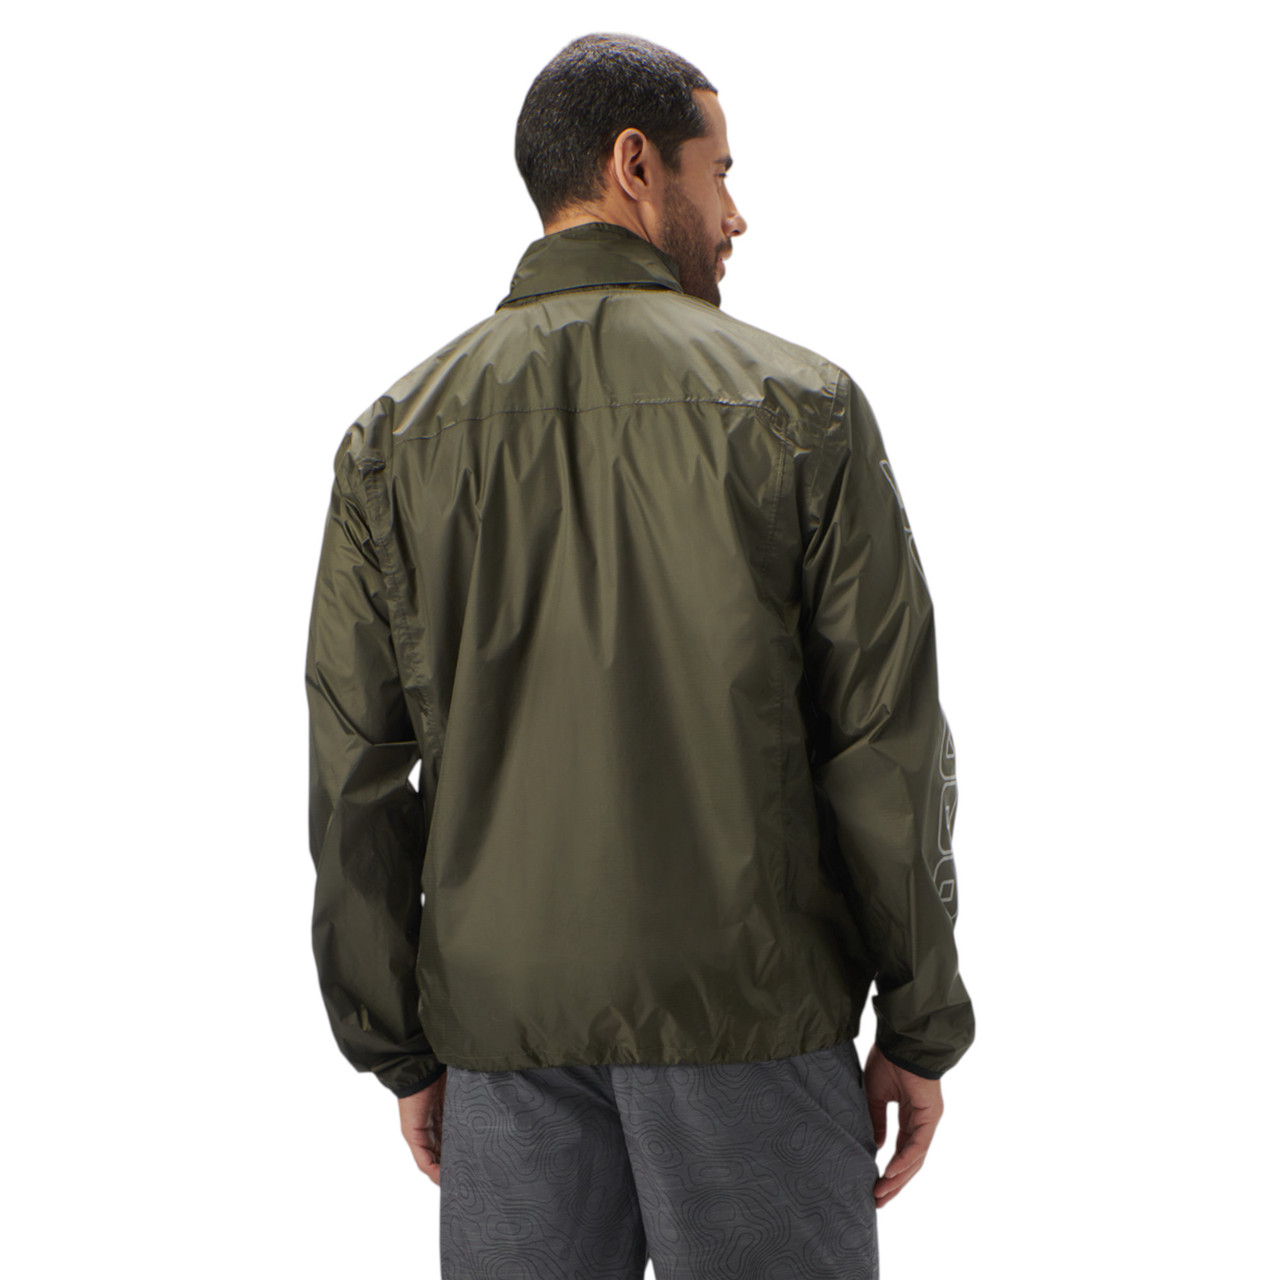 Sea-Doo New OEM, Men's 2XL Water-Resistant Windproof Jacket, 4547001477